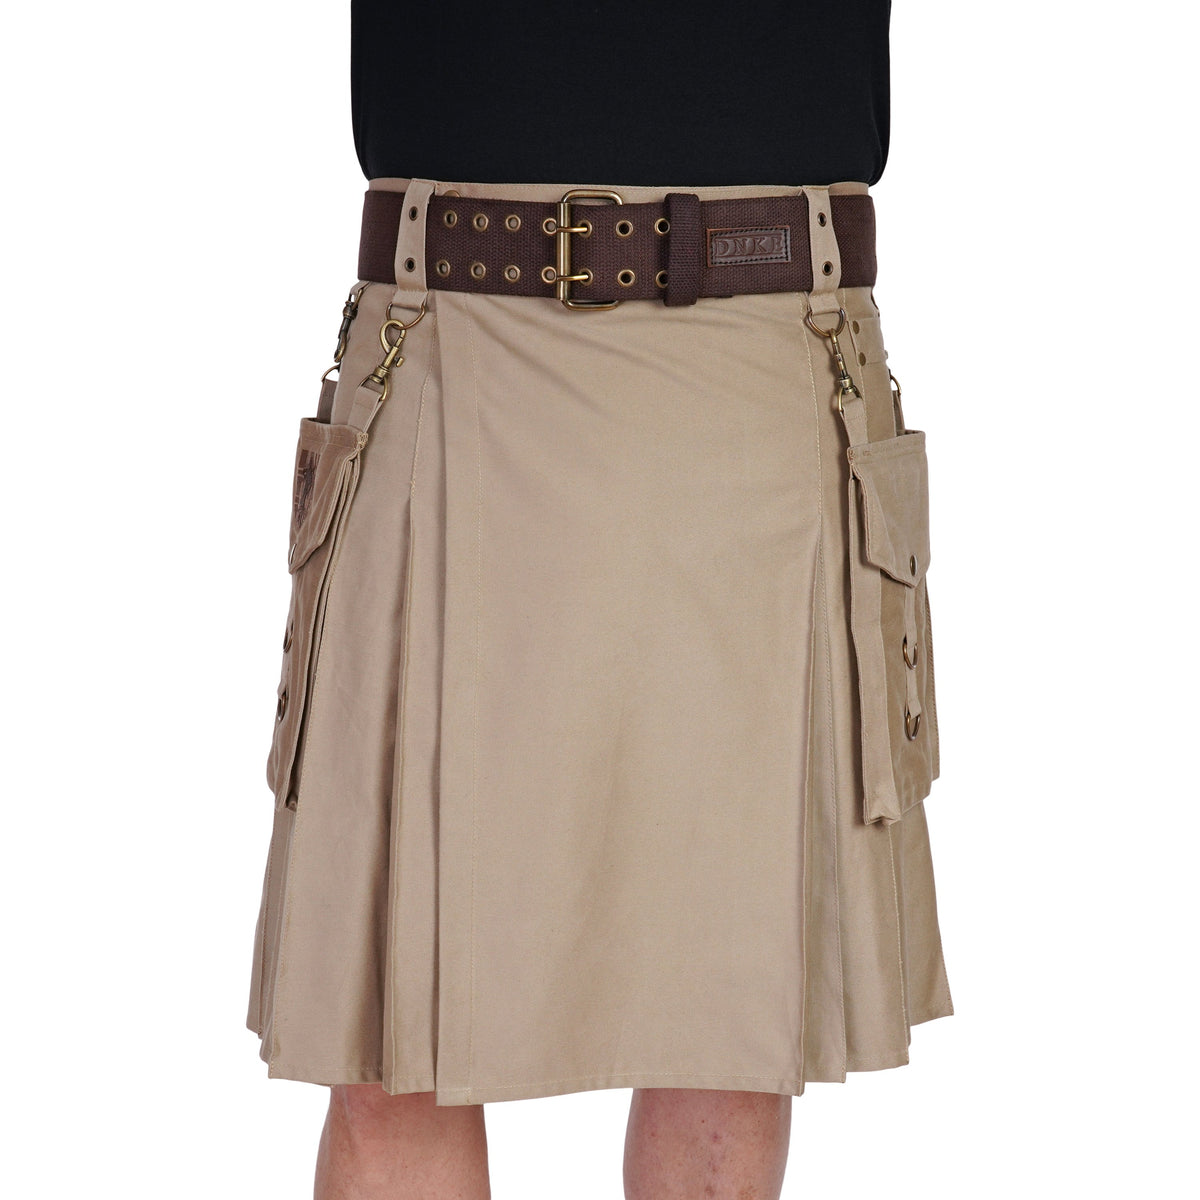 Double Prong Kilt Belt - Brown Woven Cotton Cover